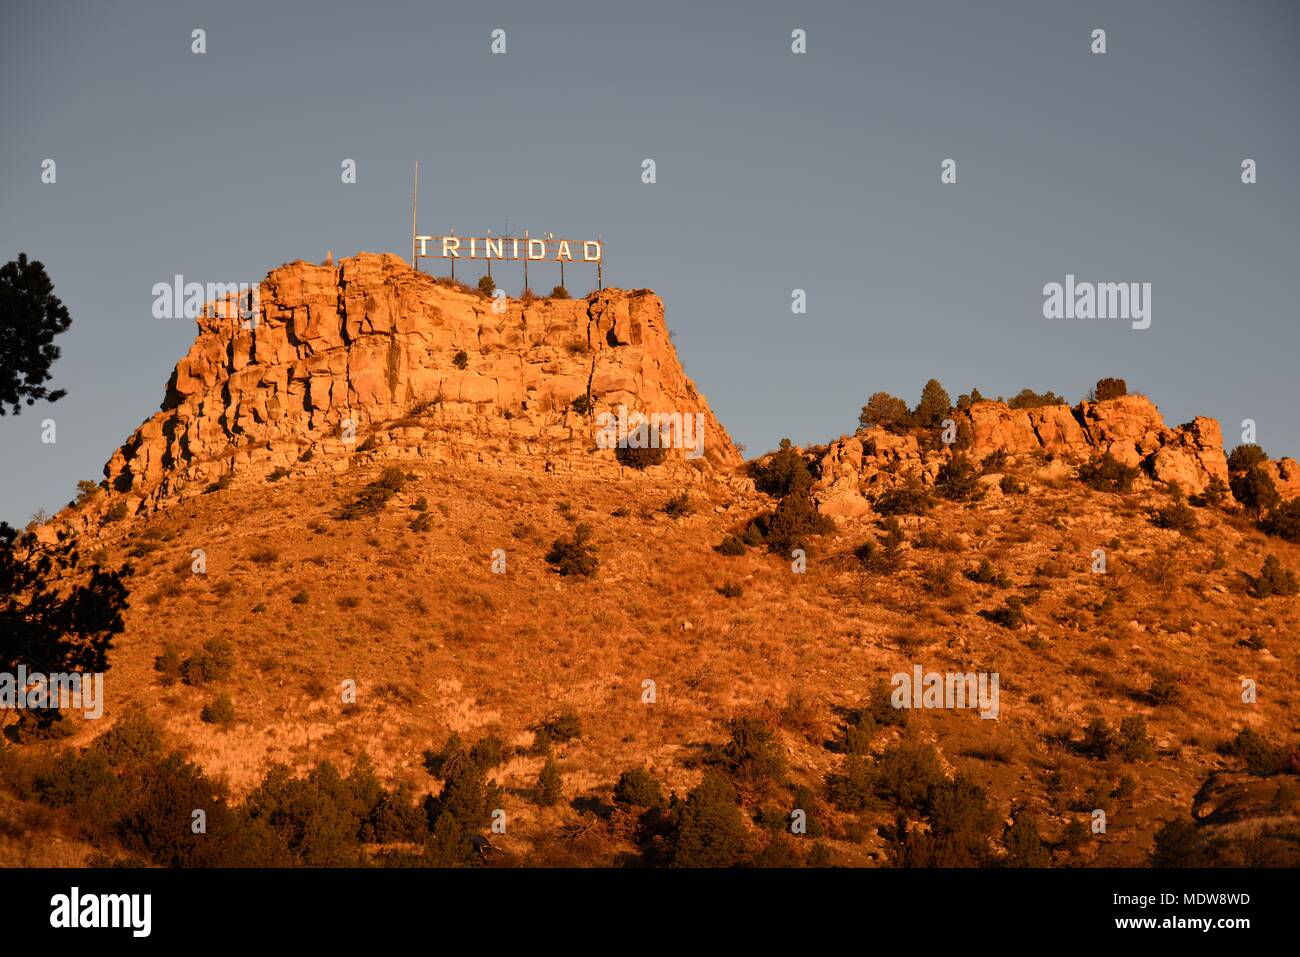 Ciudad de Trinidad Colorado señal en la cima de una colina rocosa al amanecer. Foto de stock